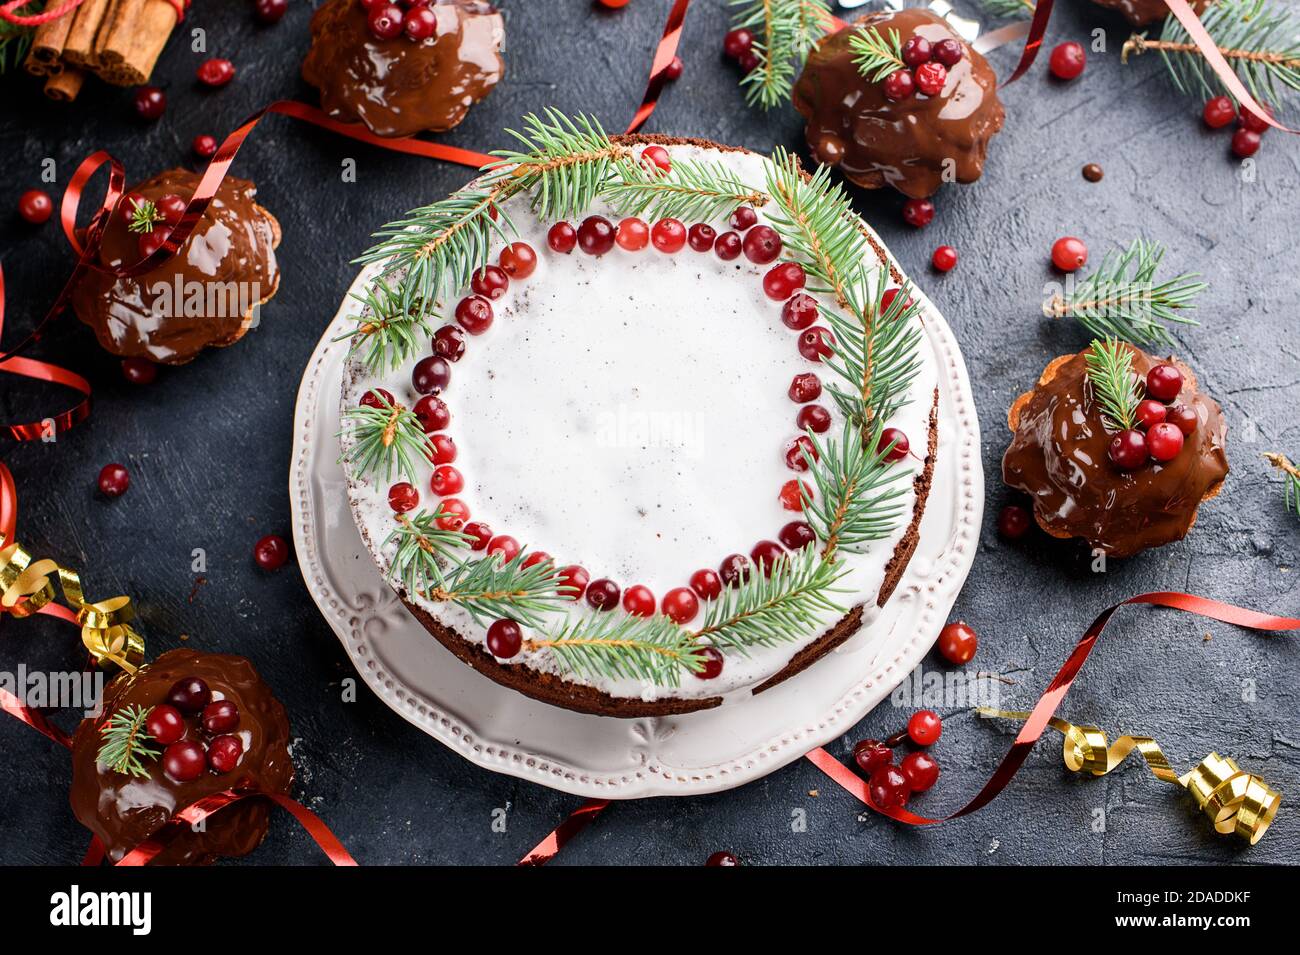 Les petits muffins au chocolat et le grand gâteau sont versés avec du chocolat, décoré de baies d'hiver. Bâtons de cannelle, décoration en flocons de neige sur une table sombre. Plat Banque D'Images